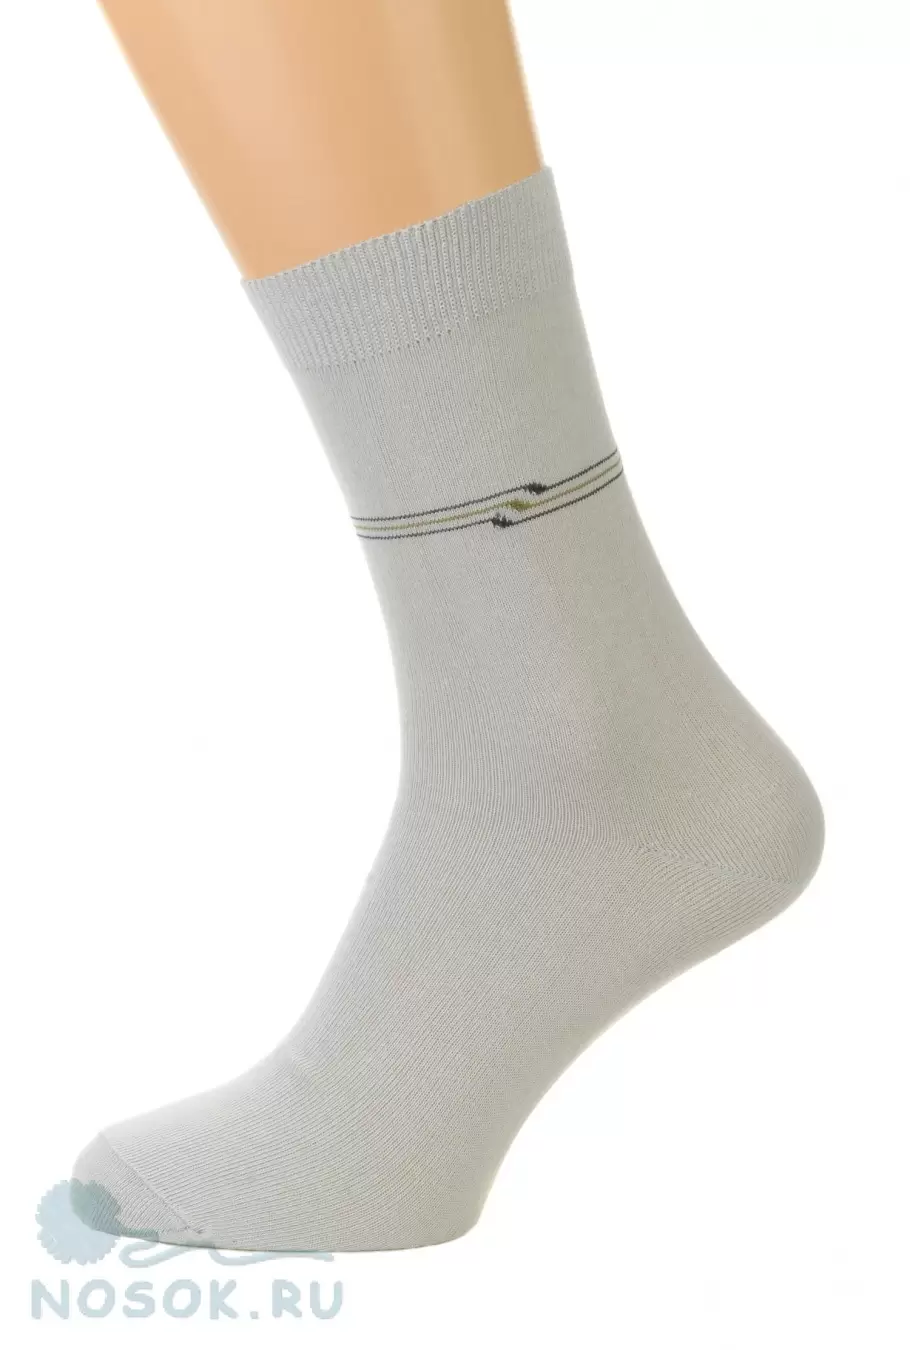 Pingons 1А3, мужские носки (изображение 1)